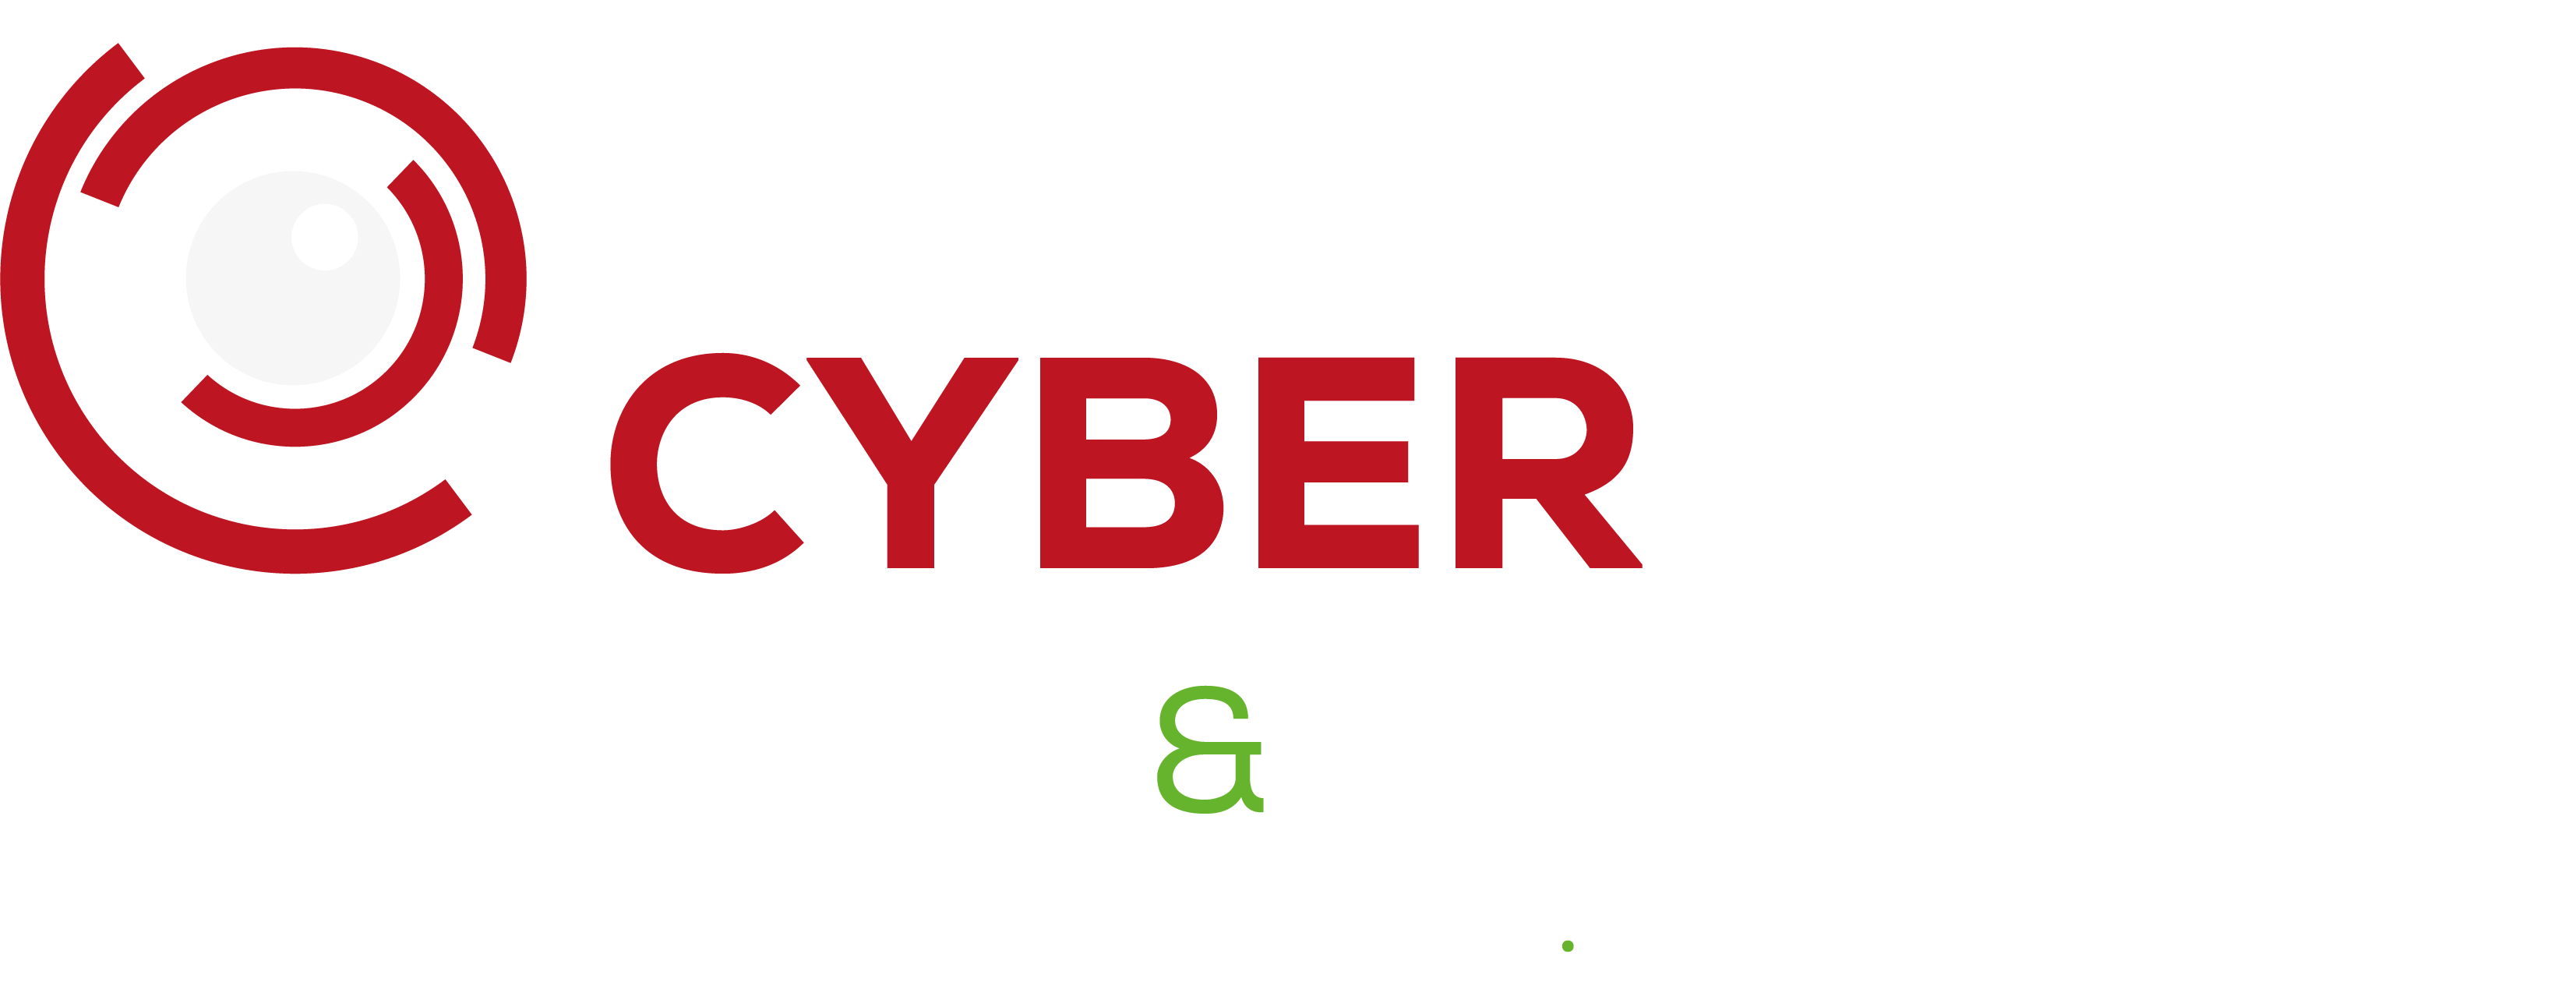 UK Cyber Week 2022